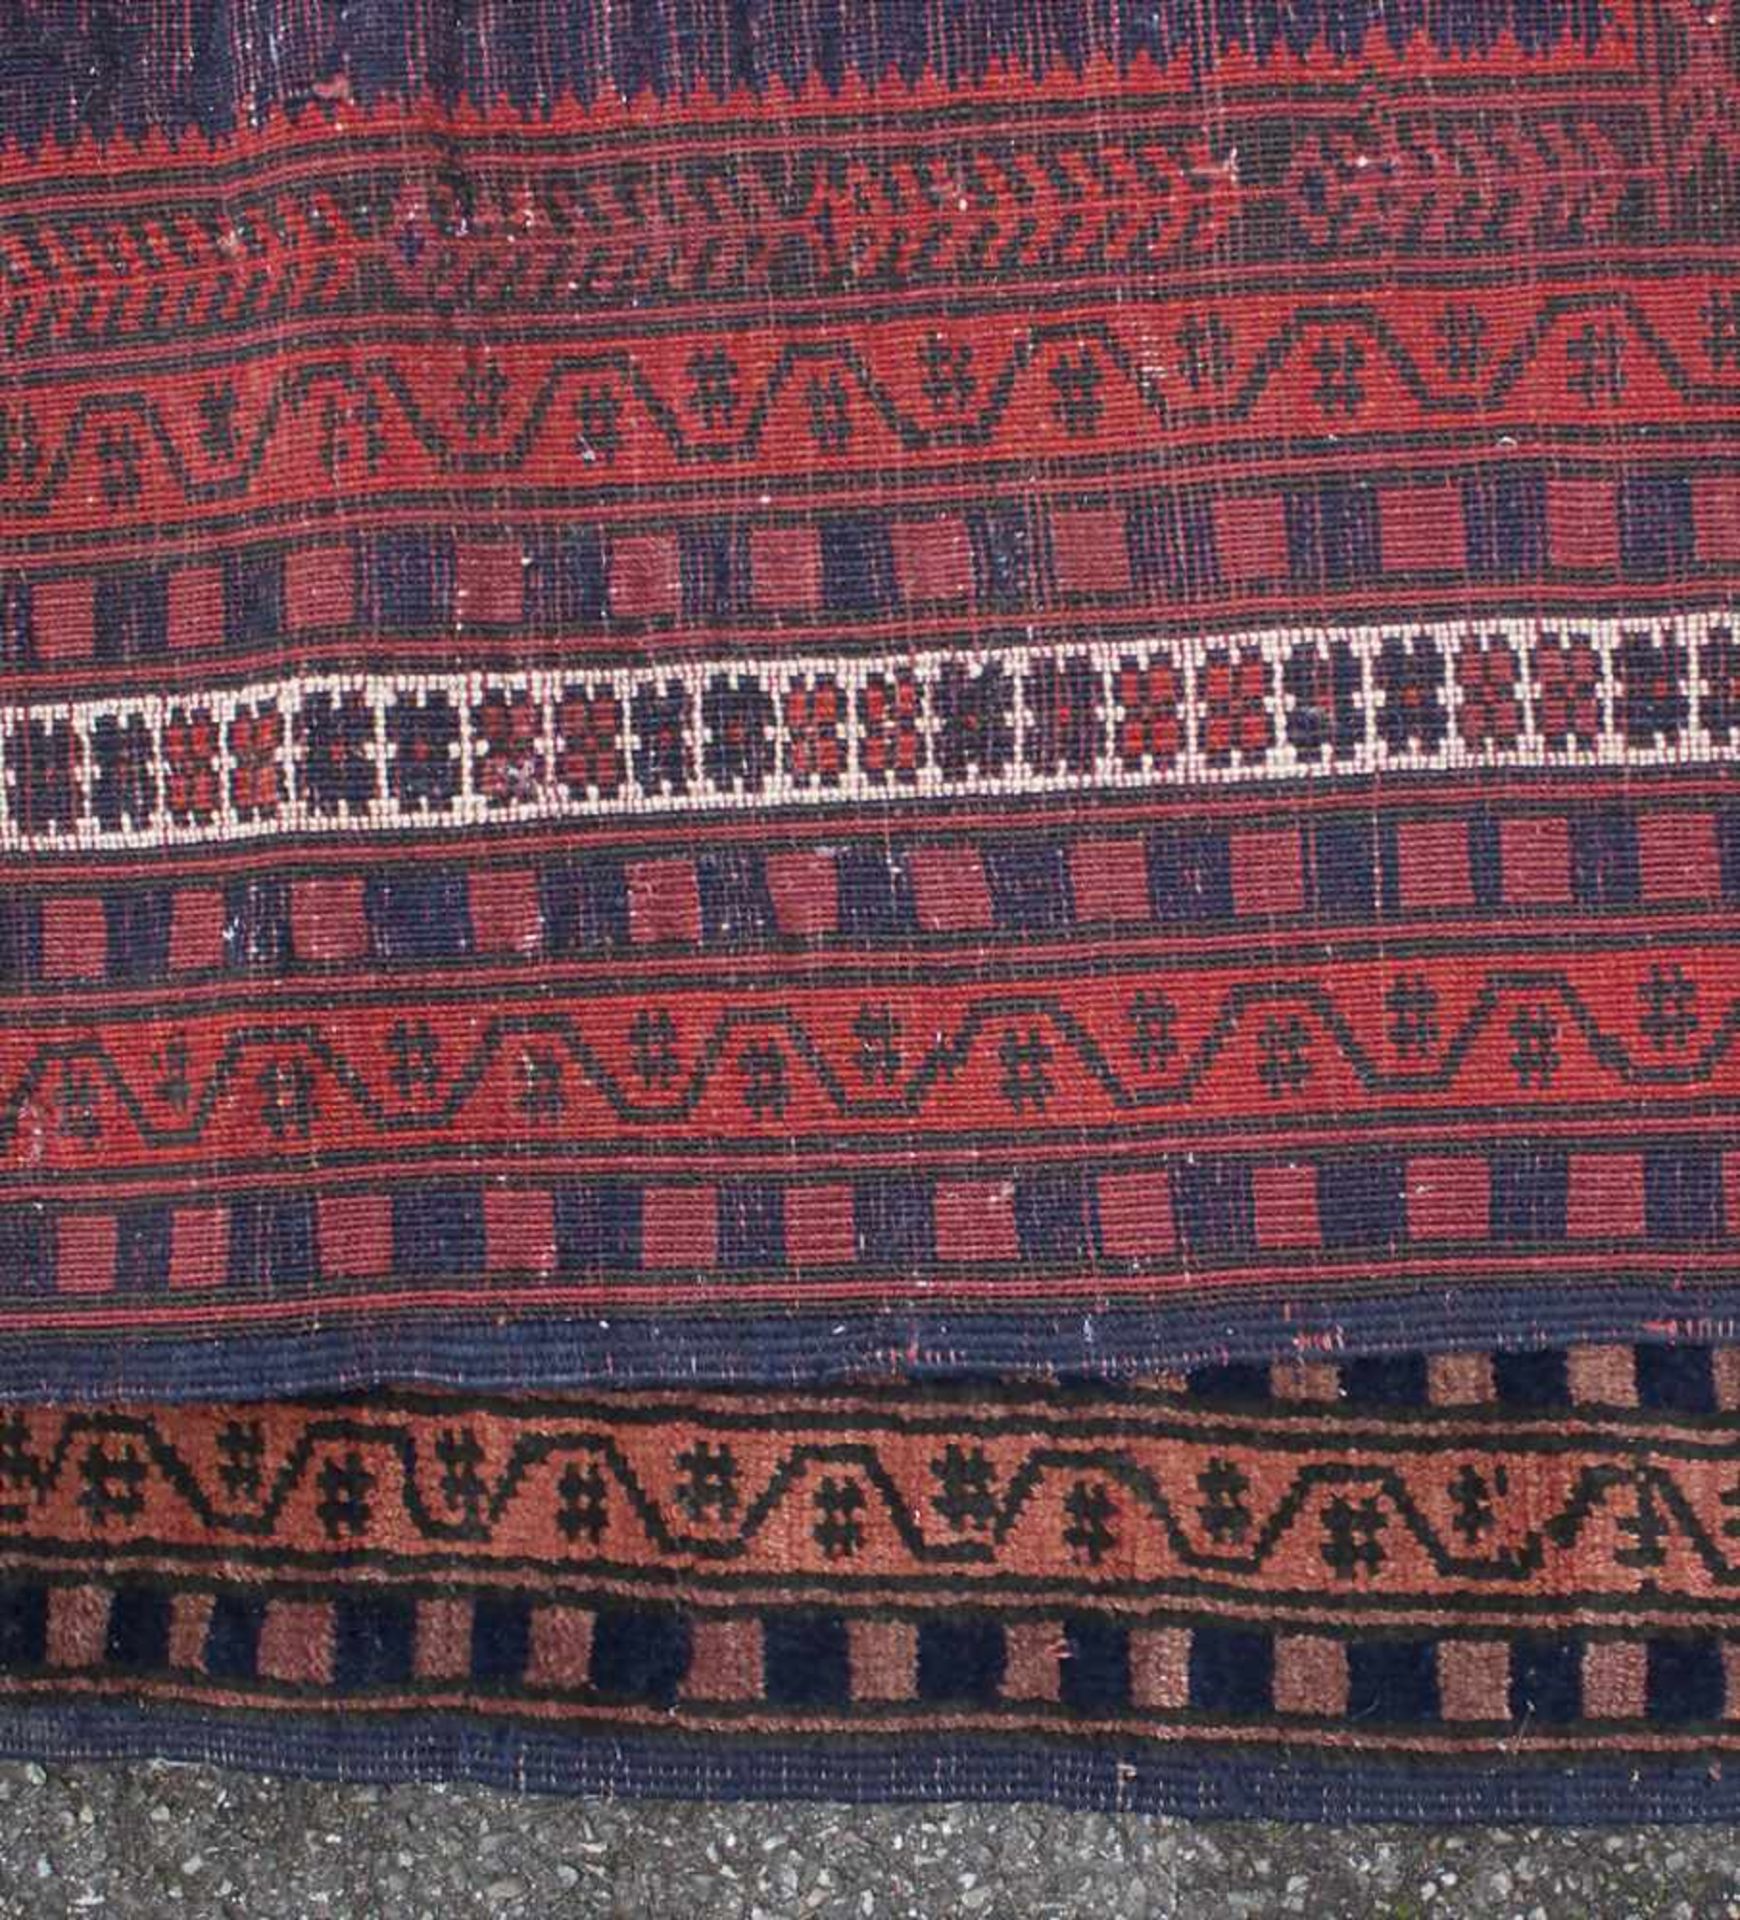 Orientteppich / An oriental carpetMaterial: Wolle auf Baumwolle, Naturfarben, Maße: 160 x 110 cm, - Image 5 of 7